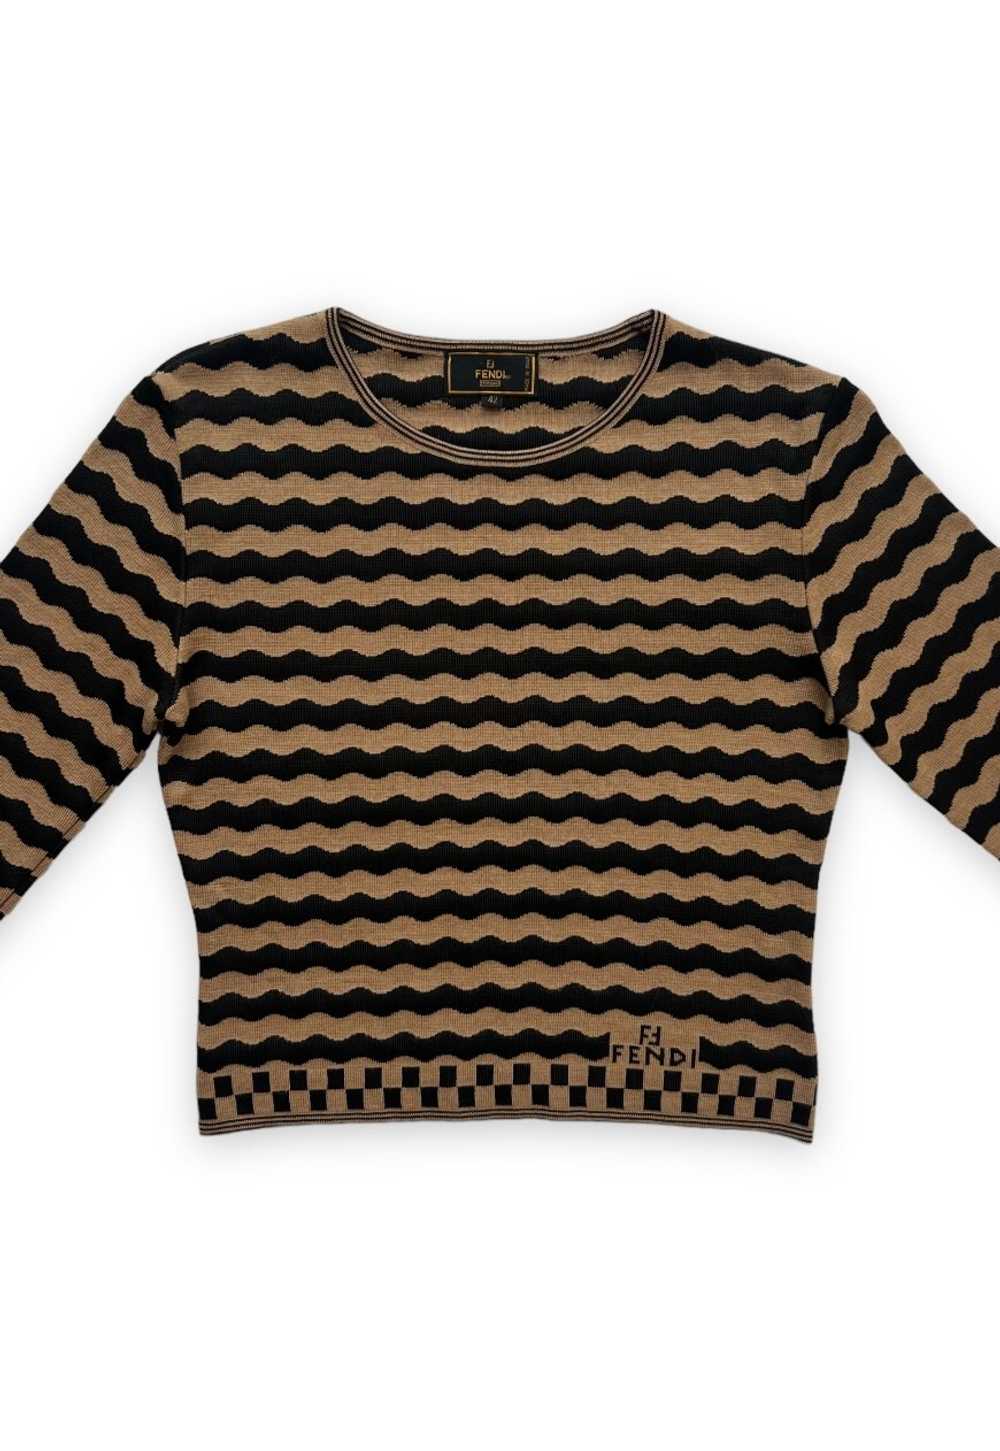 Vintage Fendi top knit crop jumper FF stripe beig… - image 1